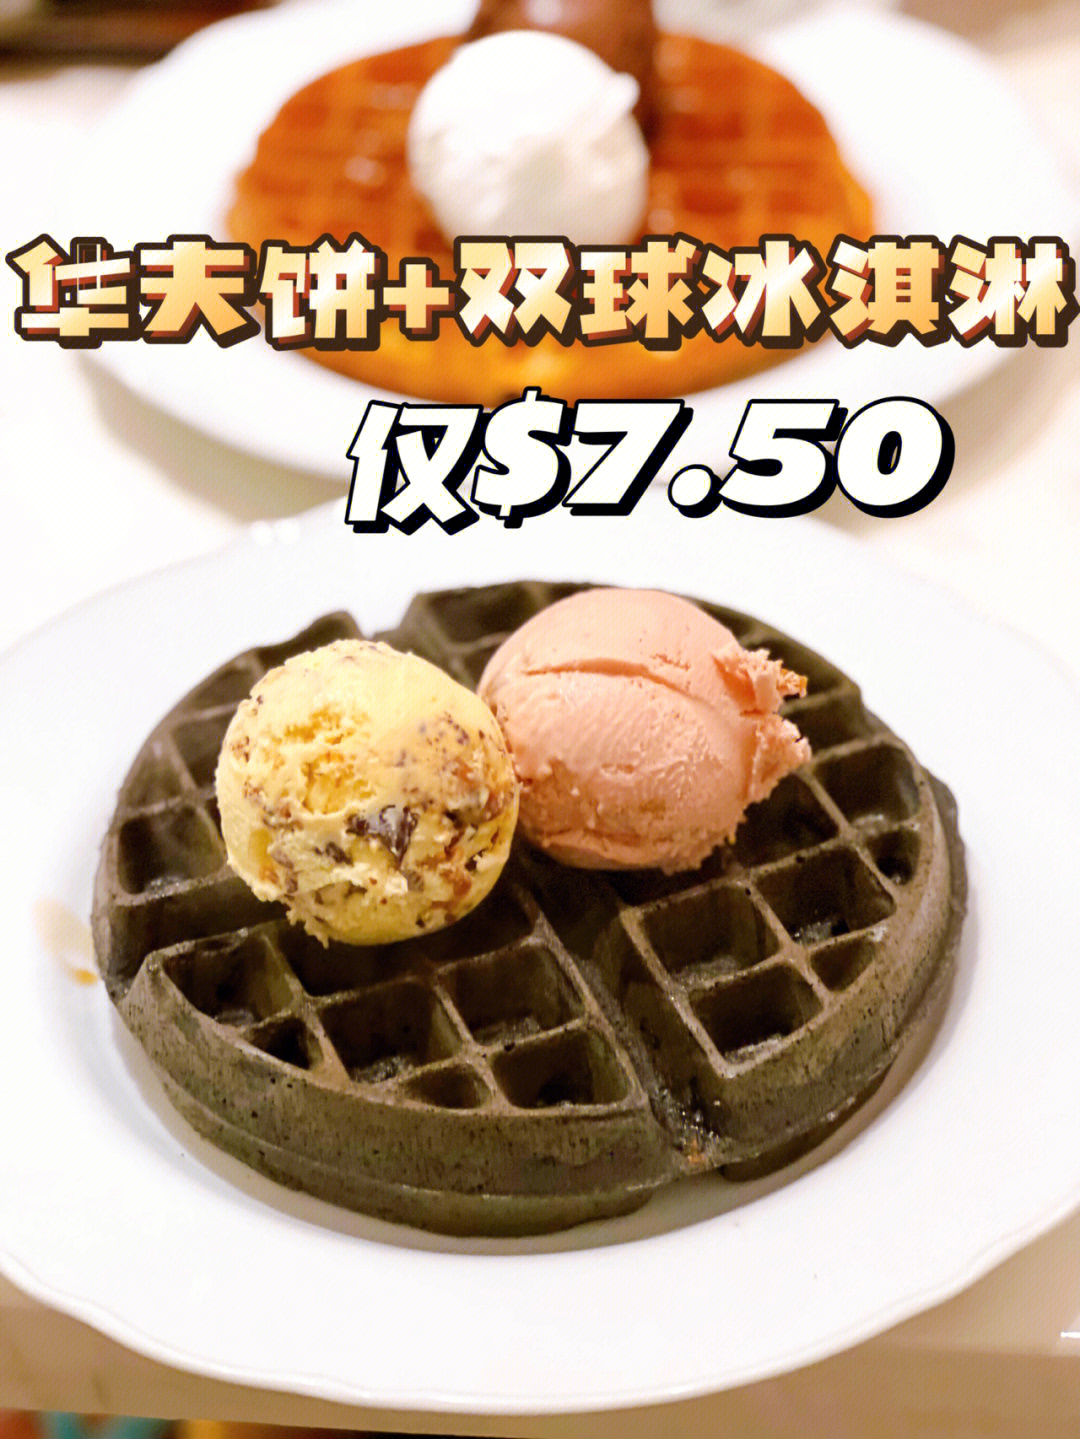 新加坡探店750get华夫饼双球冰淇淋